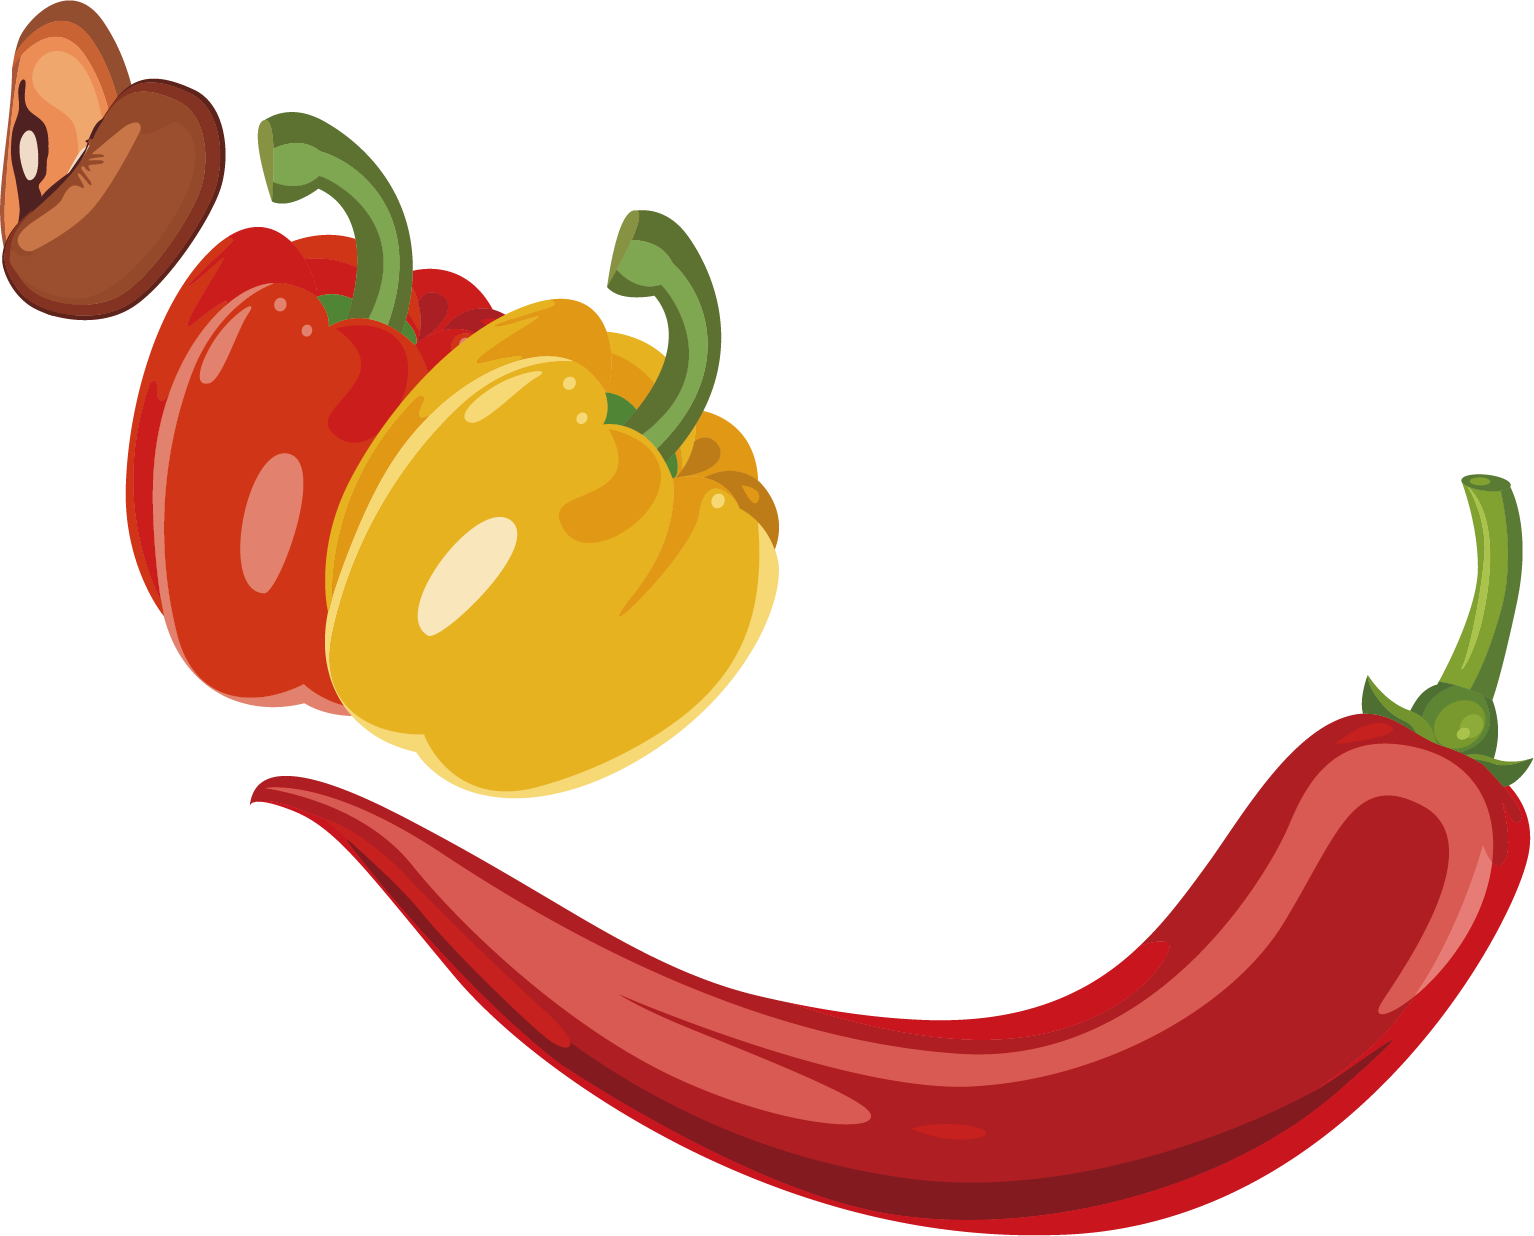 Chili Pepper Bell Pepper Vegetable - Chili Pepper Bell Pepper Vegetable (1534x1236)